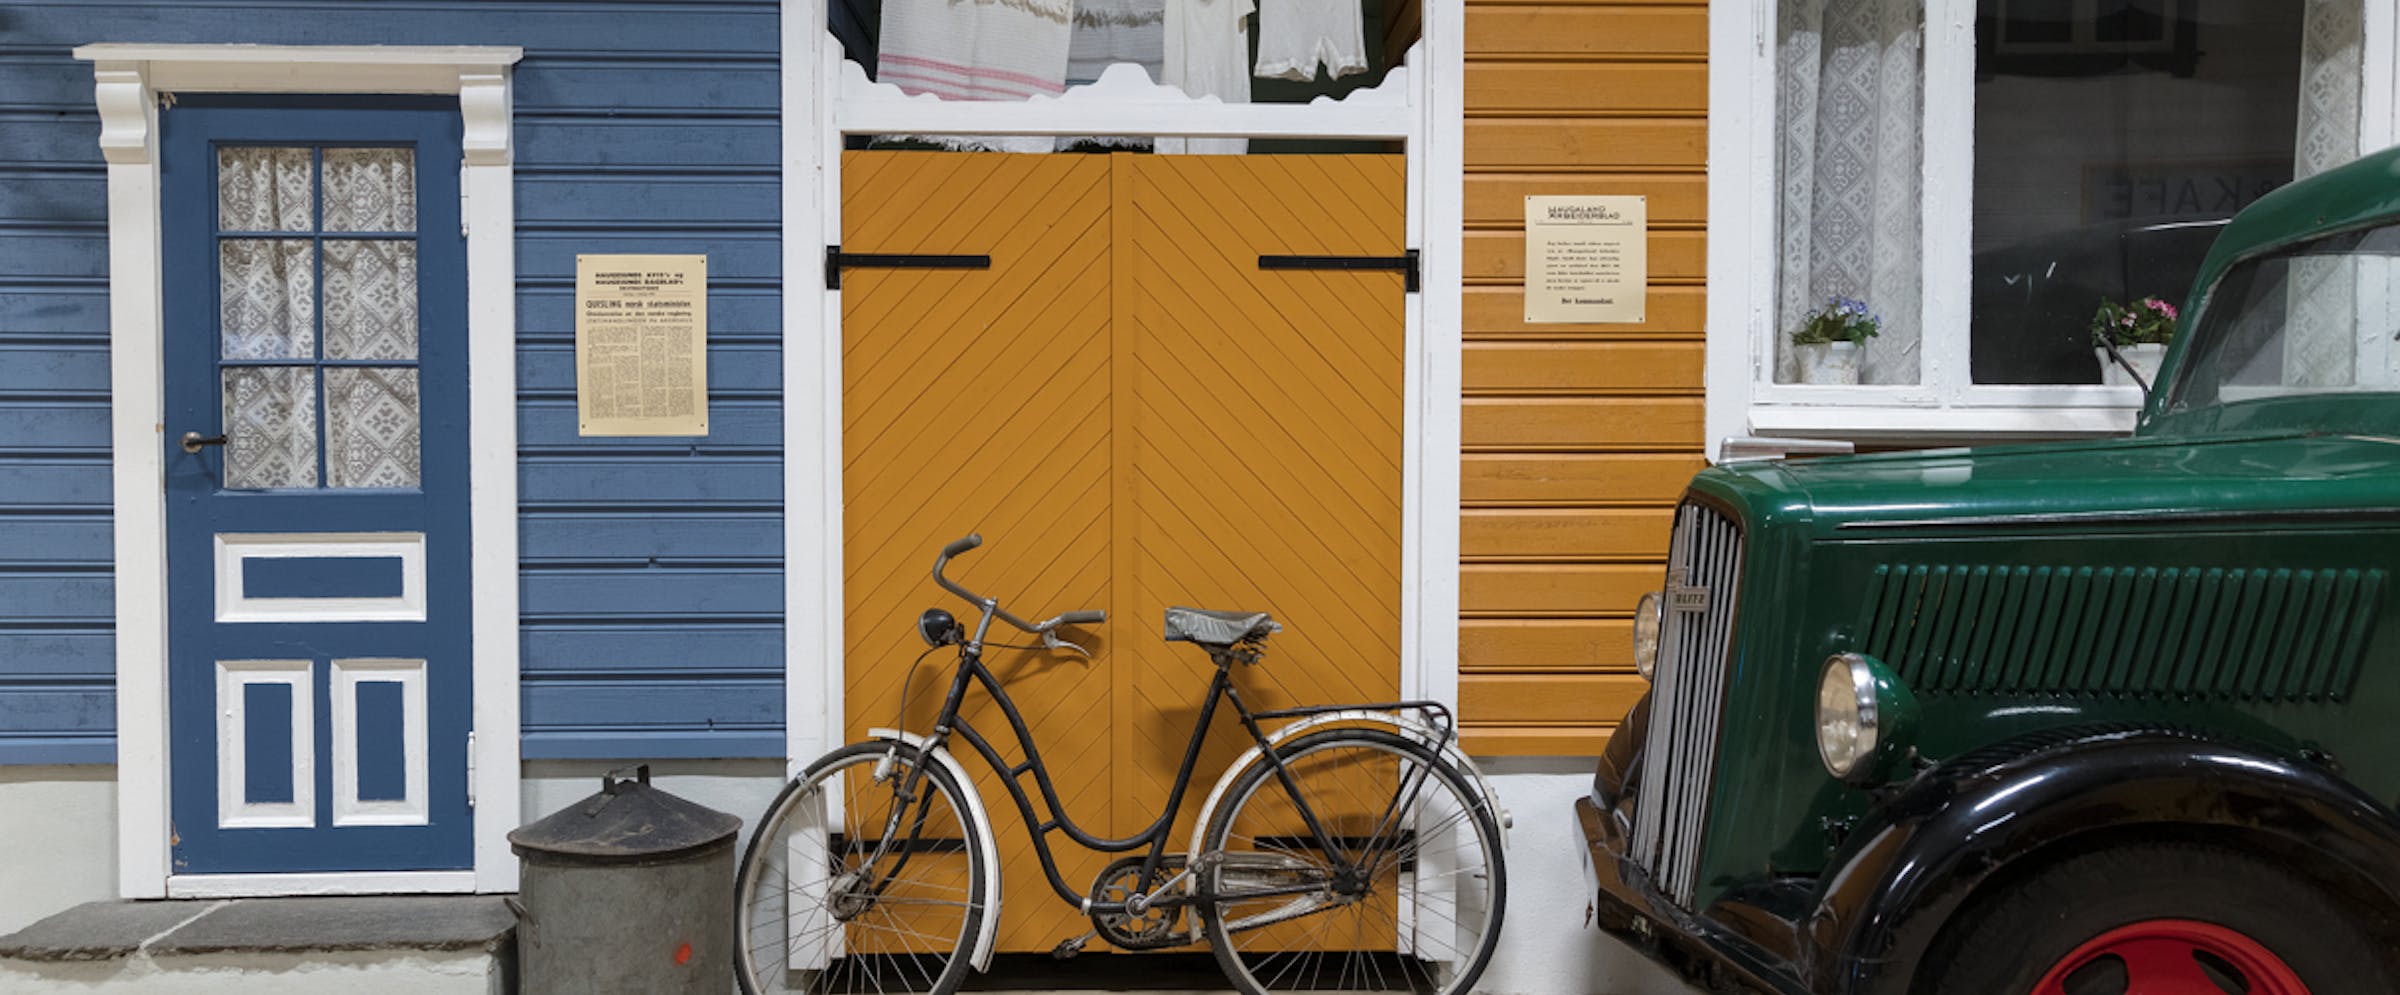 Sykkel og bil parkert foran hus i innendørs gate i Arquebus krigshistorisk museum.